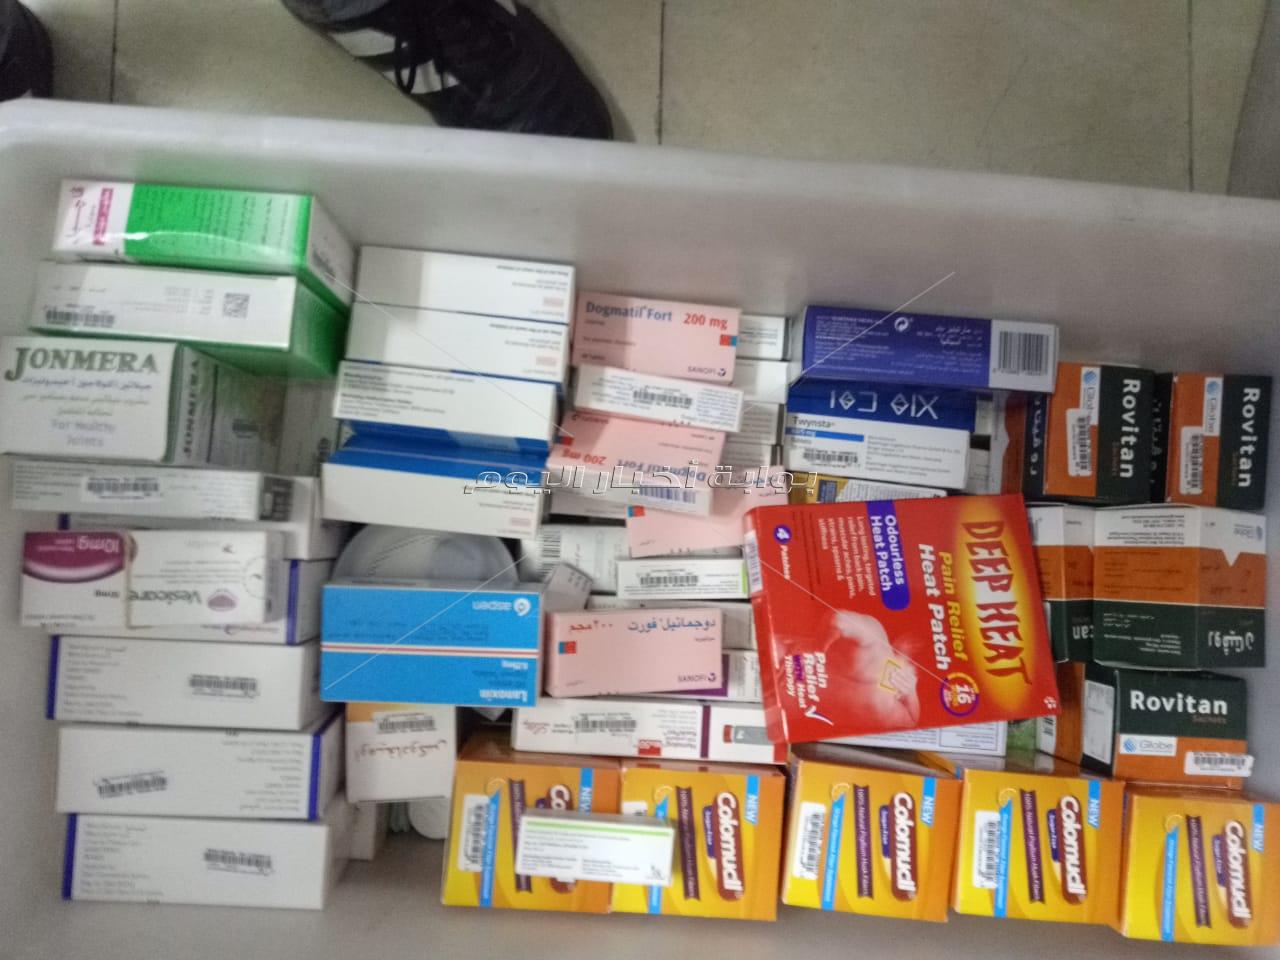 ضبط 400 ألف قرص أدوية فاسدة داخل مخزن تابع لصيدلية شهيرة بالقاهرة